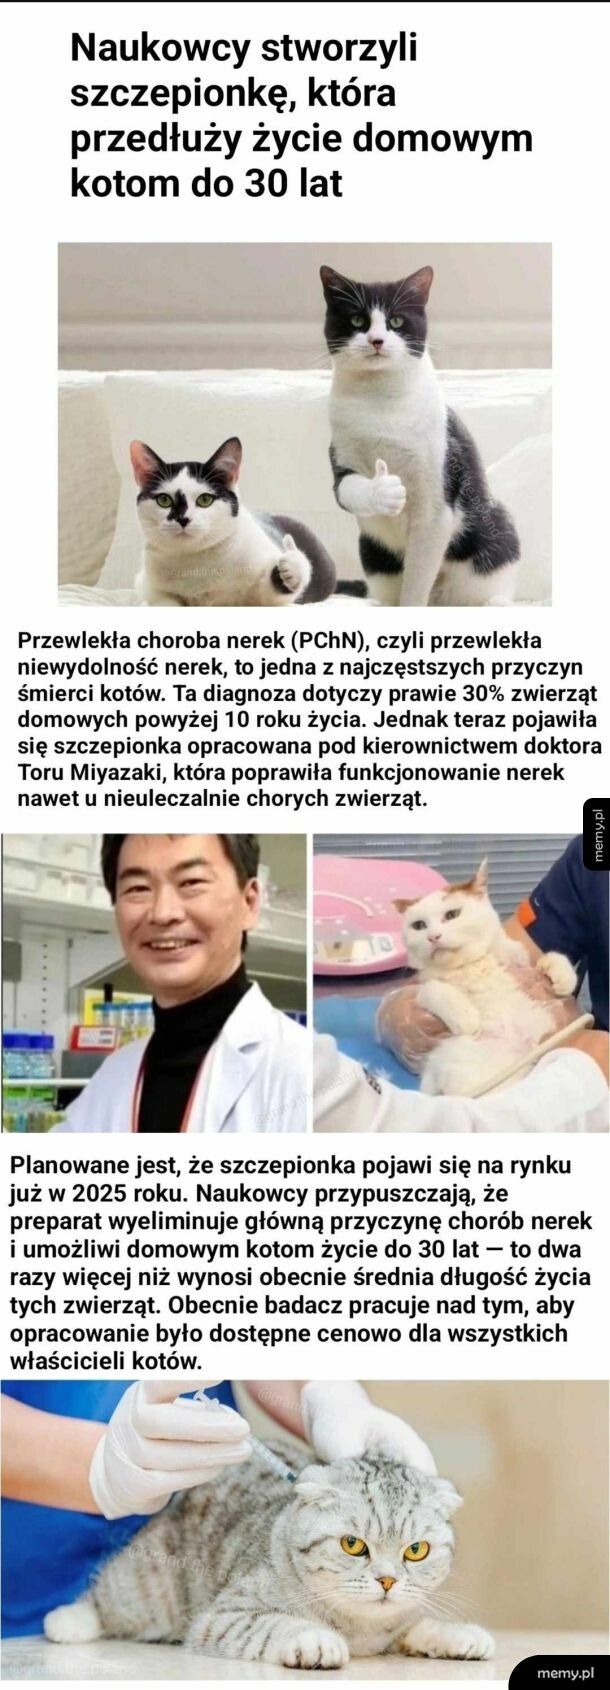 Szczepionka, która ma przedłużyć kotom życie